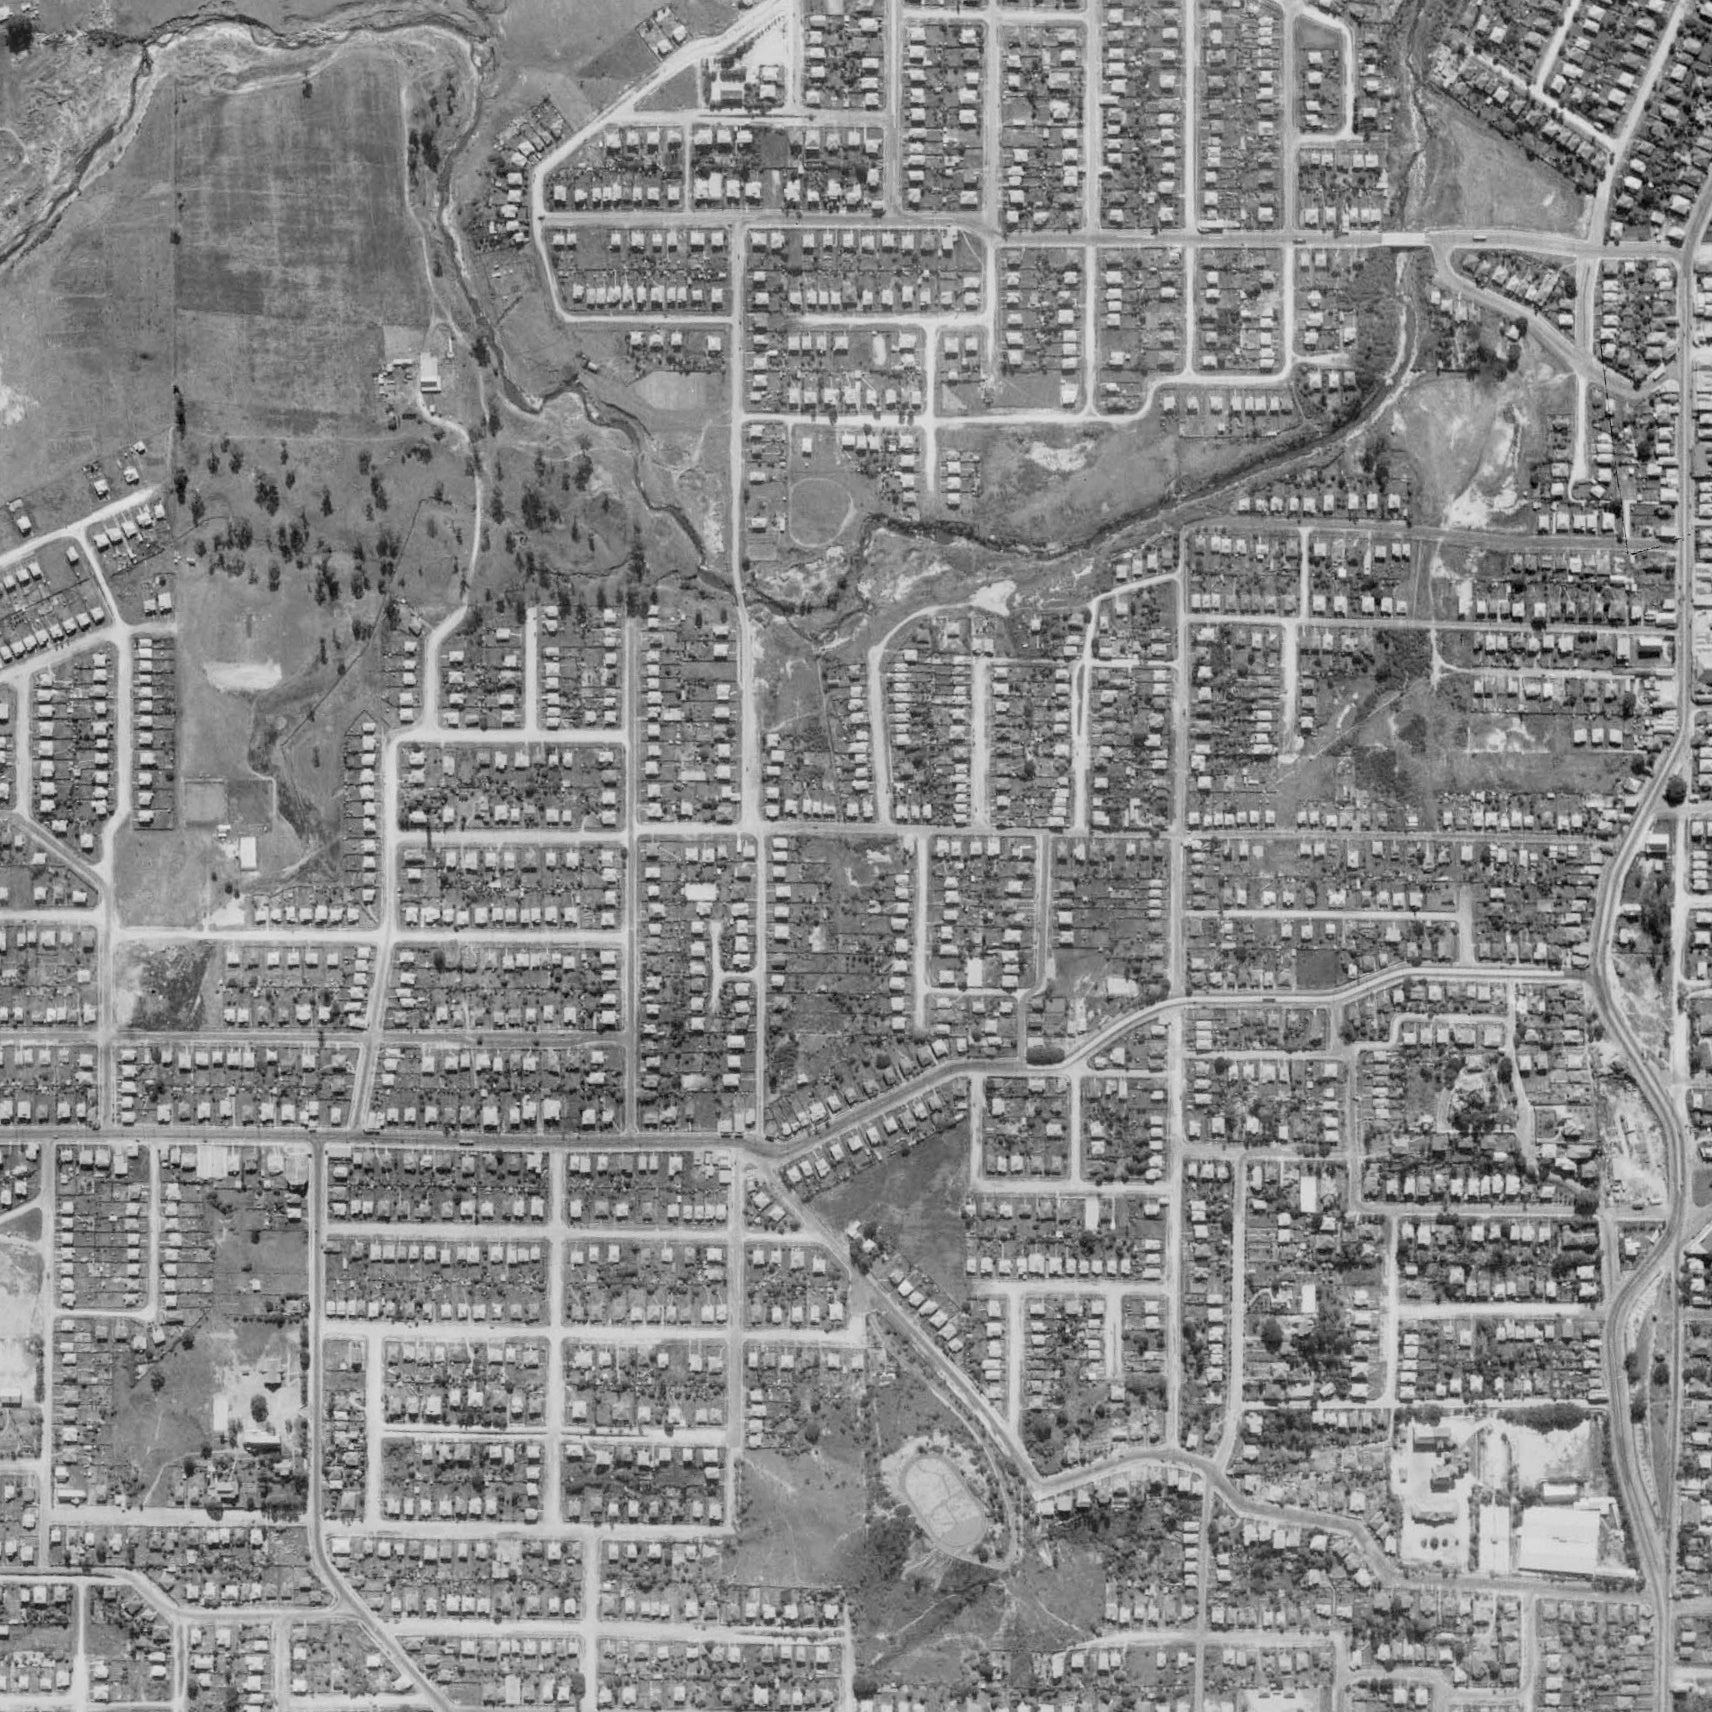 1946 Grange - Aerial Photo - Grange in 1946